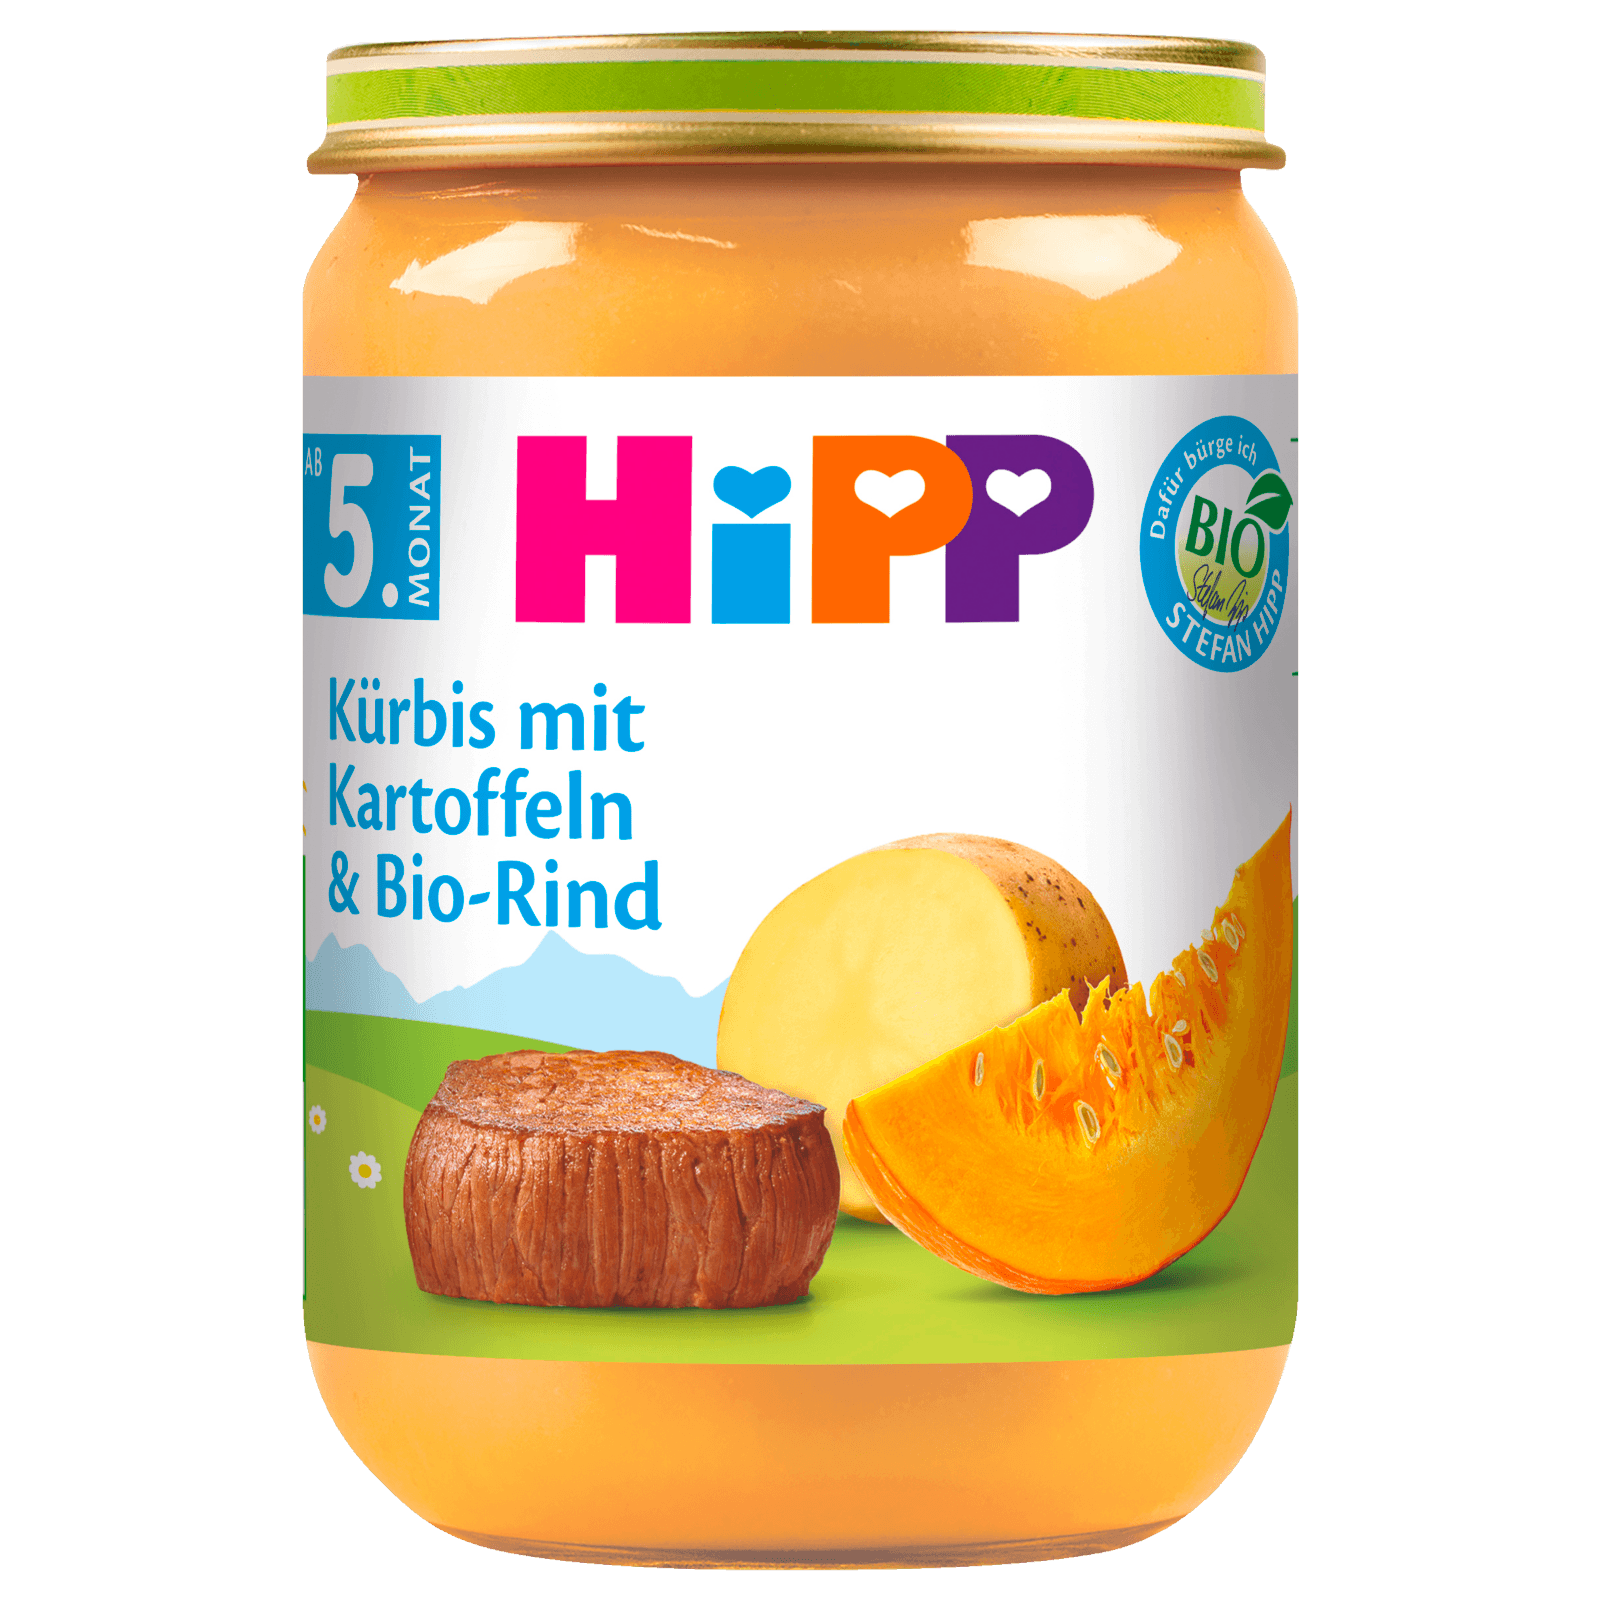 Hipp Kürbis mit Kartoffeln & Bio-Rind 190g